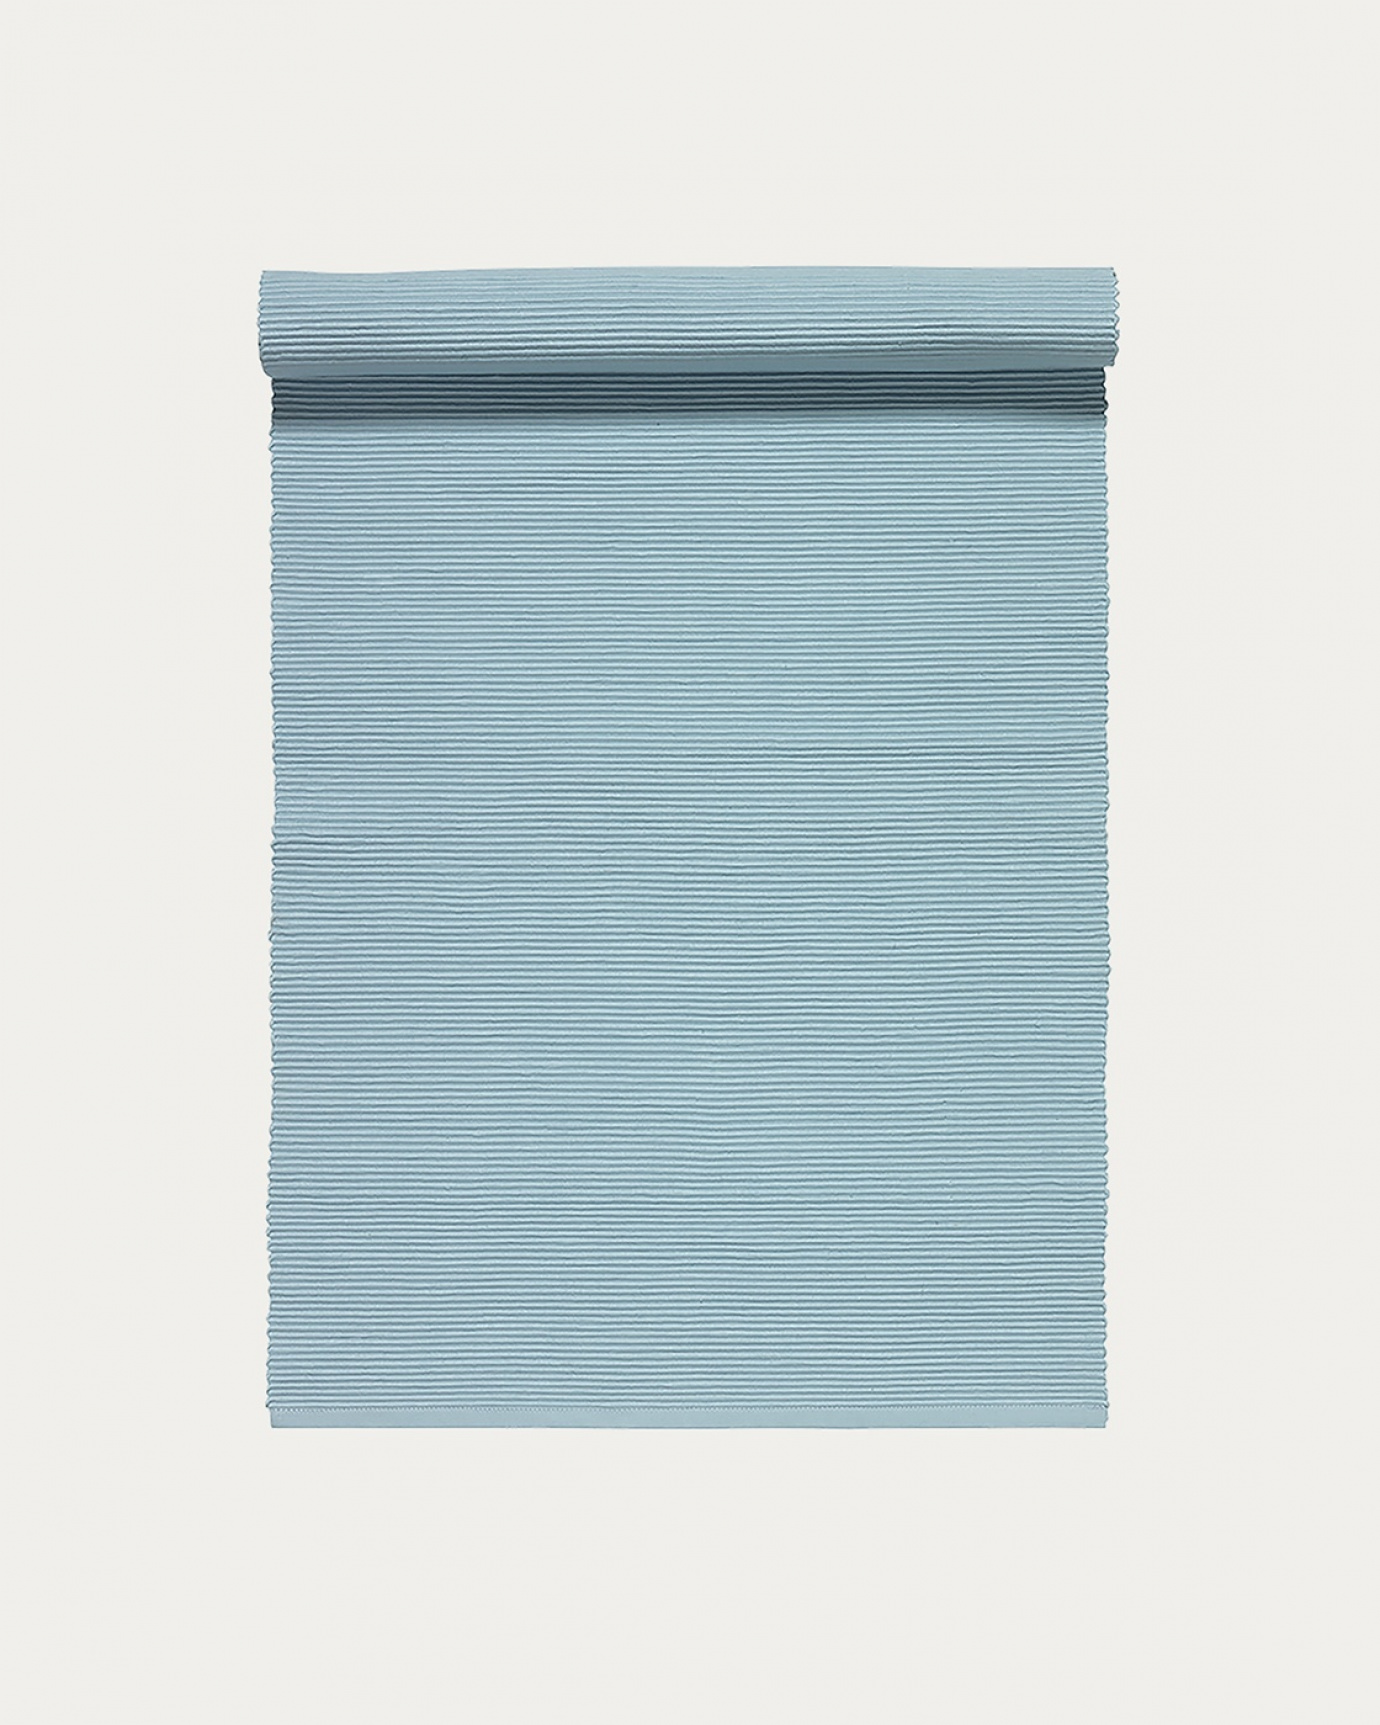 Image du produit chemin de table UNI ciel clair bleu en coton doux de qualité côtelée de LINUM DESIGN. Taille 45 x 150 cm.